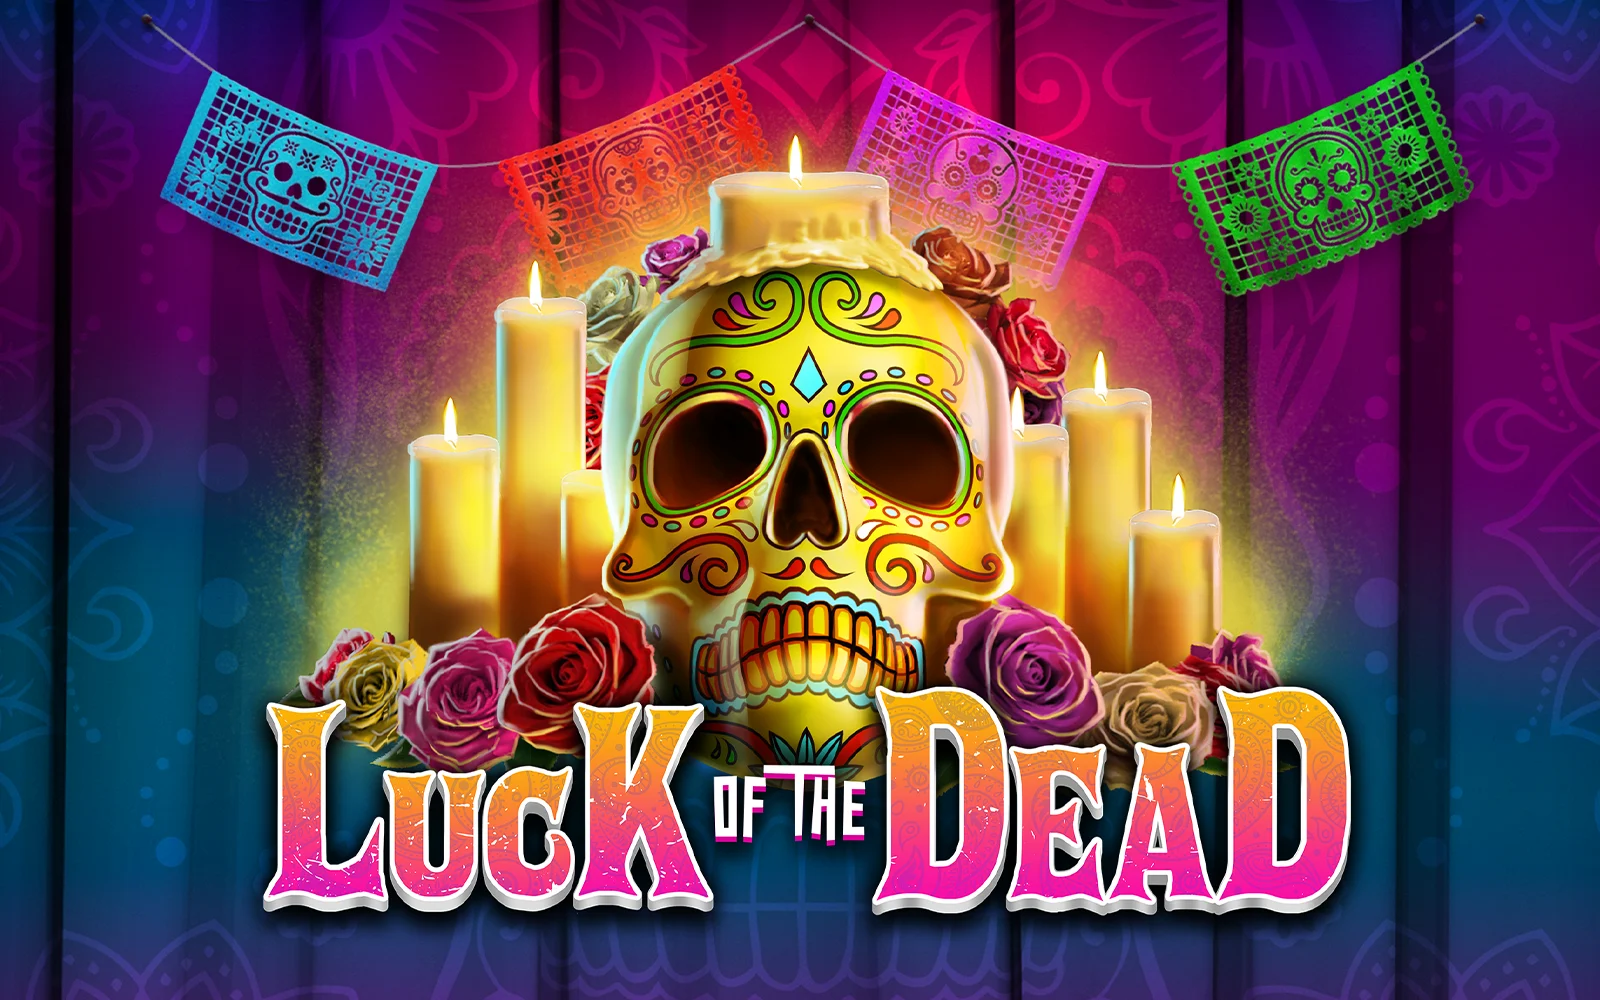 Juega a Luck of the Dead en el casino en línea de Starcasino.be